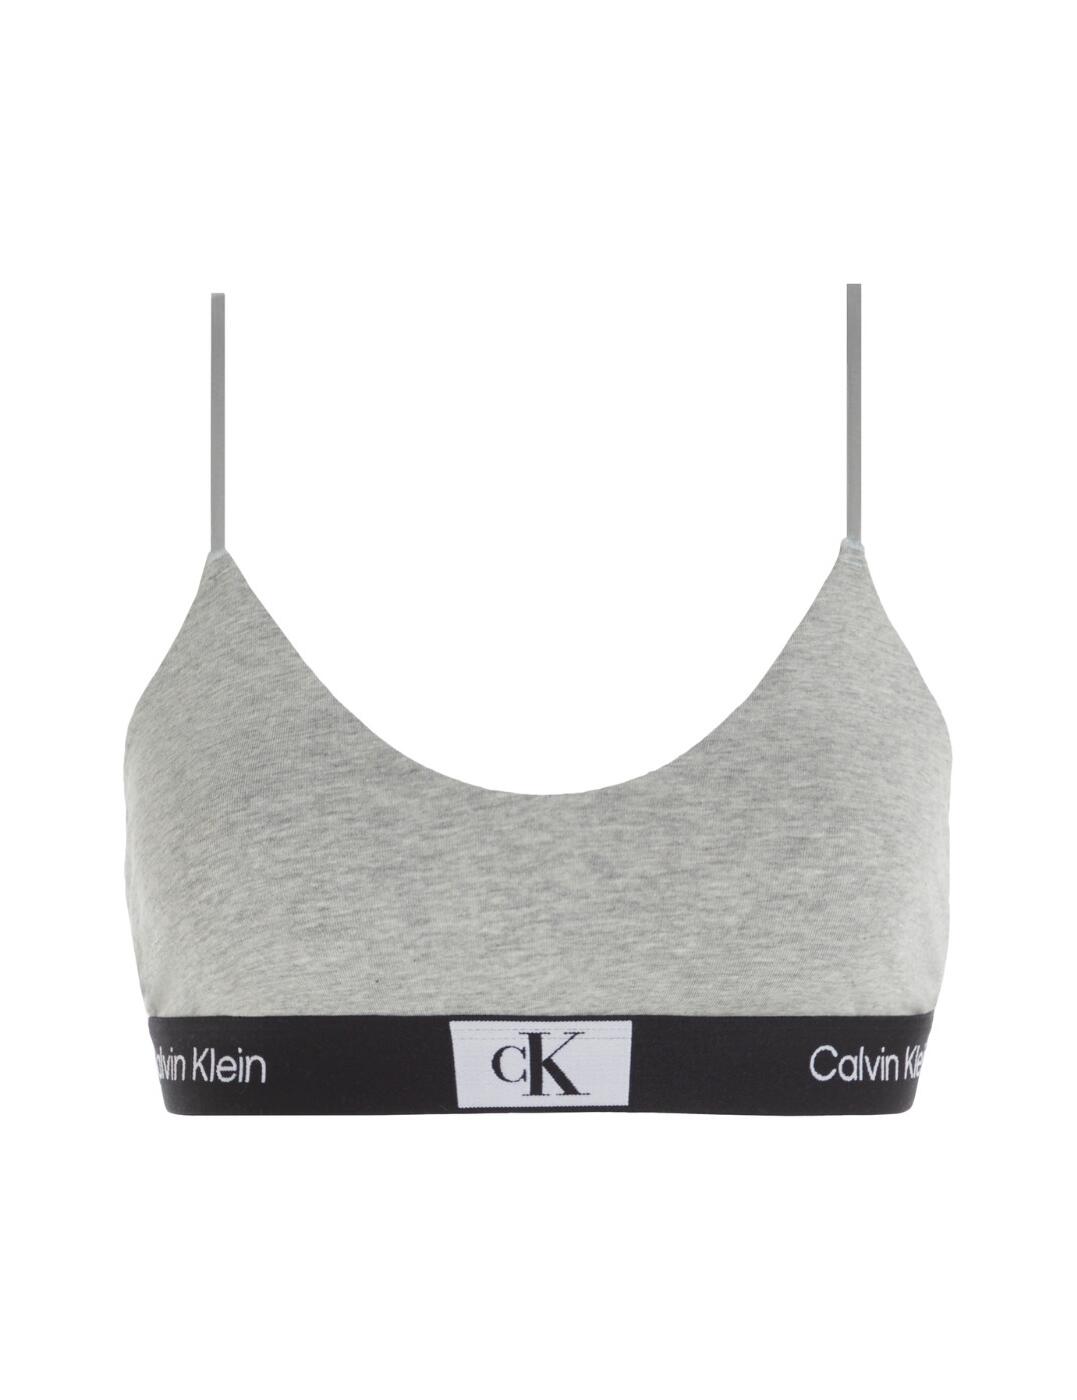 Calvin Klein CK1996 Bralette Womens Designer Underwear Unlined Bra